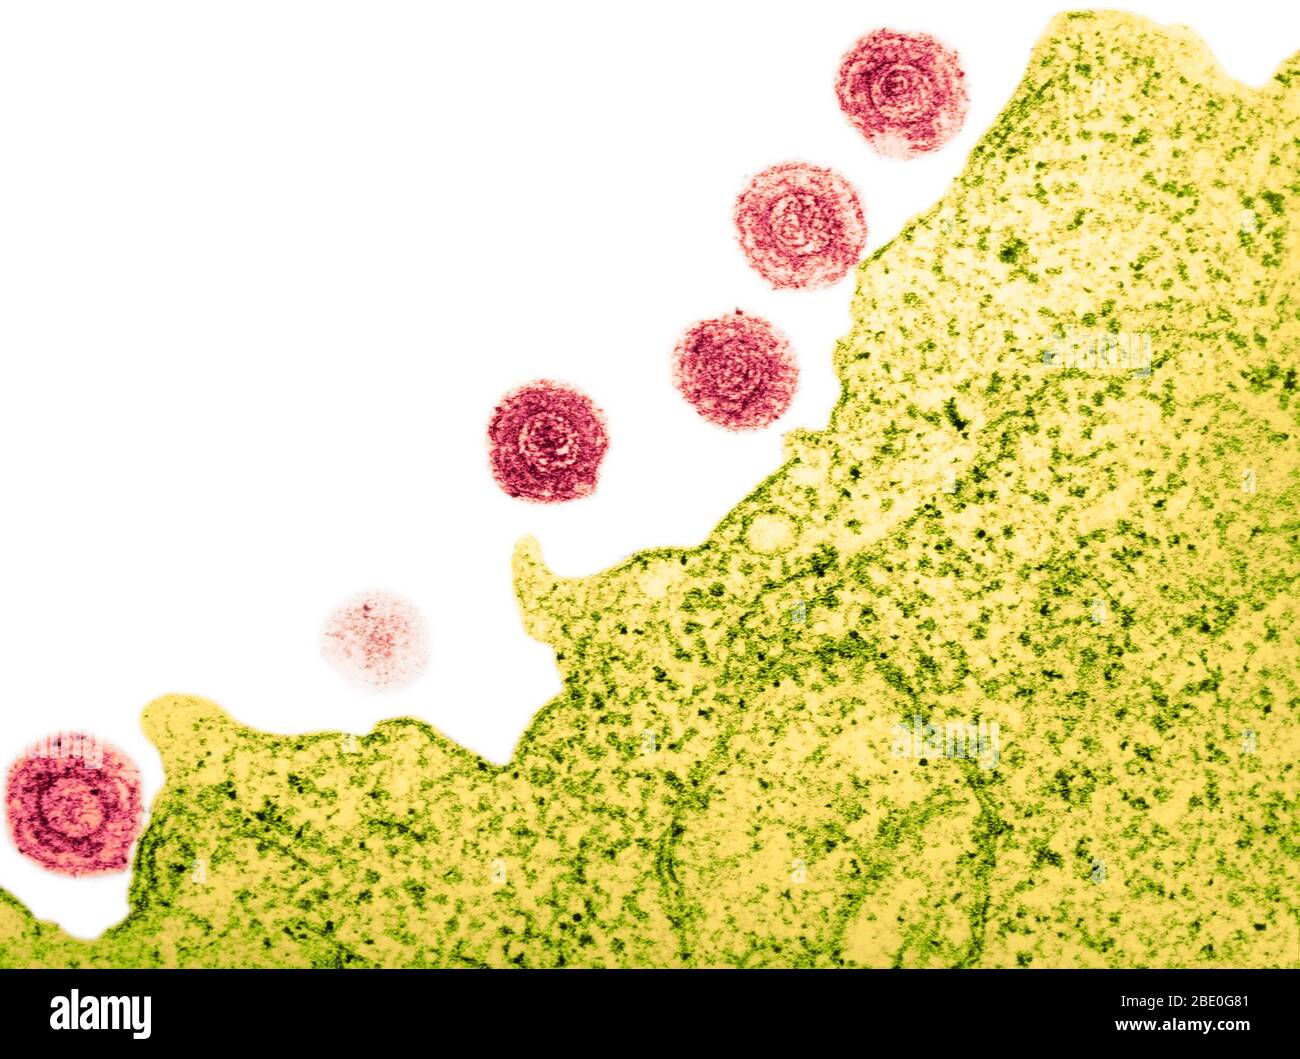 Farblich verstärkter Transmissionselektronenmikrograph (TEM) des HHV-6 (humanes Herpesvirus-6). Es wurde angenommen, dass es b-Zellen infizieren und wurde zu einer Zeit als HBLV, menschliches b-lymphotropes Virus. Es ist jetzt bekannt, T-Zellen als auch zu infizieren. Das HHV-6 ist ein doppelsträngiger DNA-Virus aus der Herpesfamilie. Die hier gezeigten Viruspartikel sind gereift und dann aus der angefallenen Lymphozyte freigesetzt. Das 'Eulenauge' der Viruspartikel ist charakteristisch für die Herpesfamilie. Stockfoto